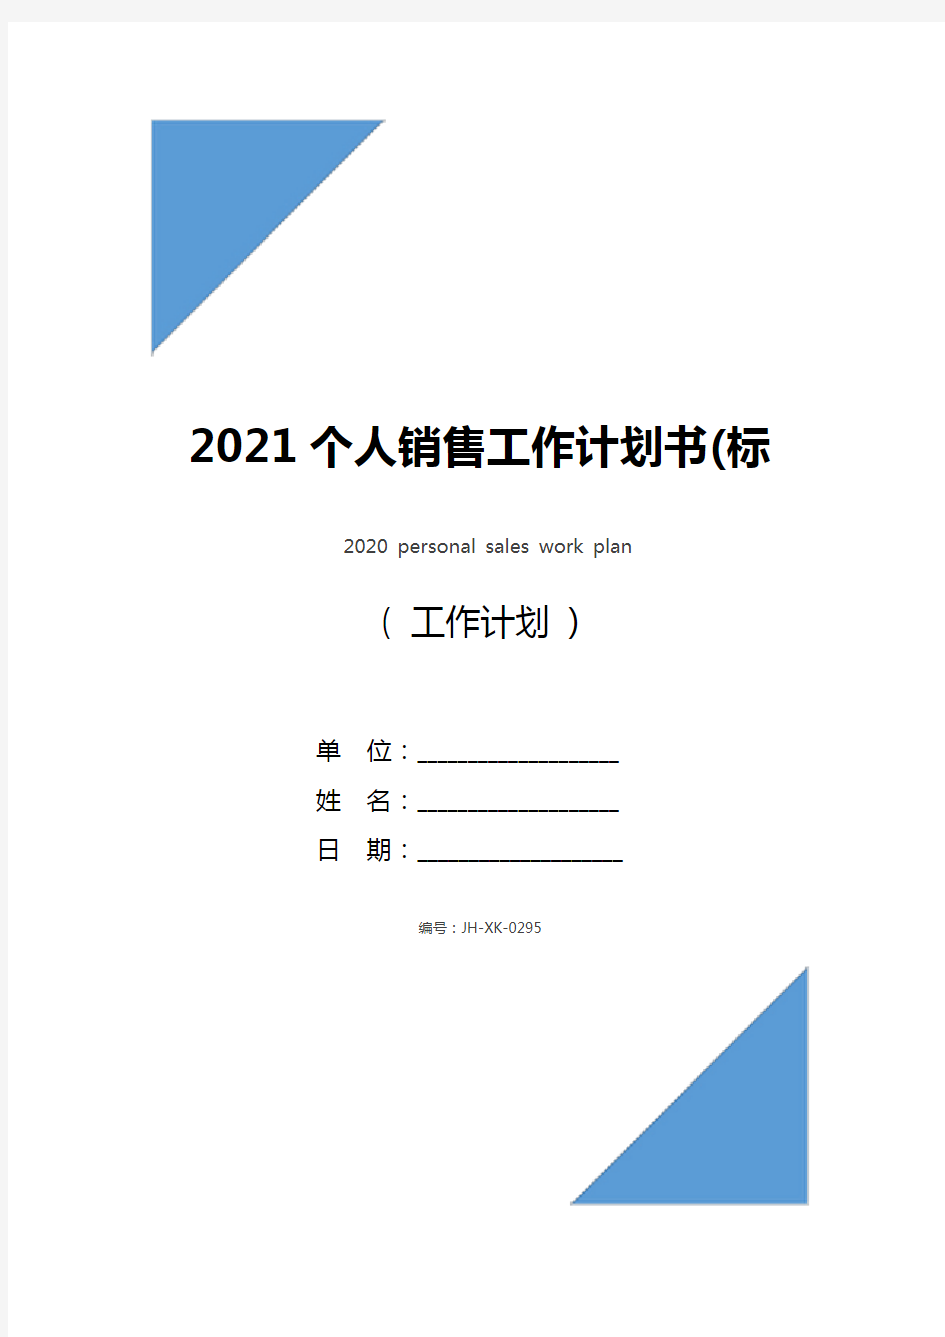 2021个人销售工作计划书(标准版)